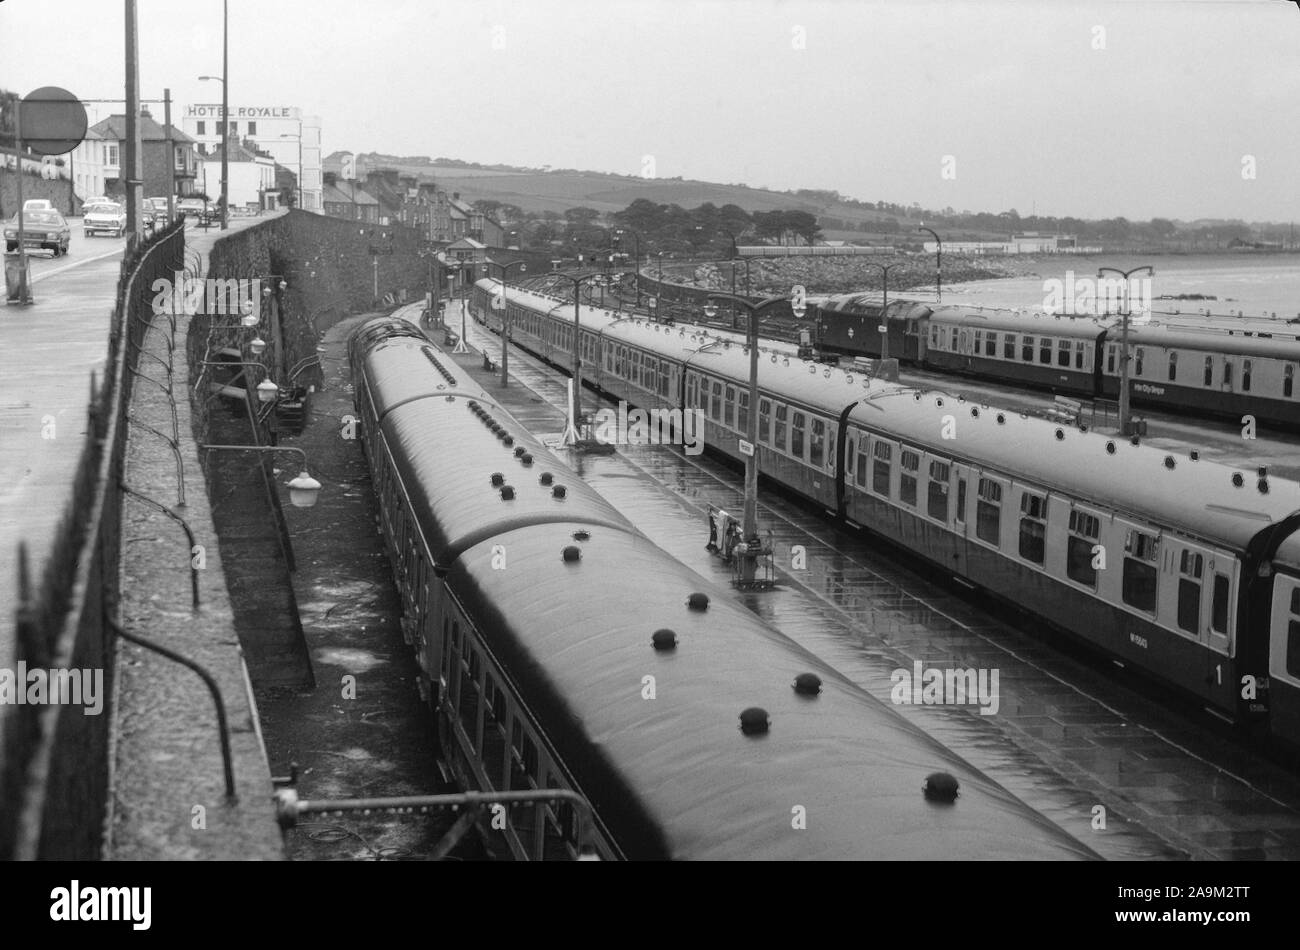 1970's British Railways trains at Penzance station, South West England, UK Stock Photo